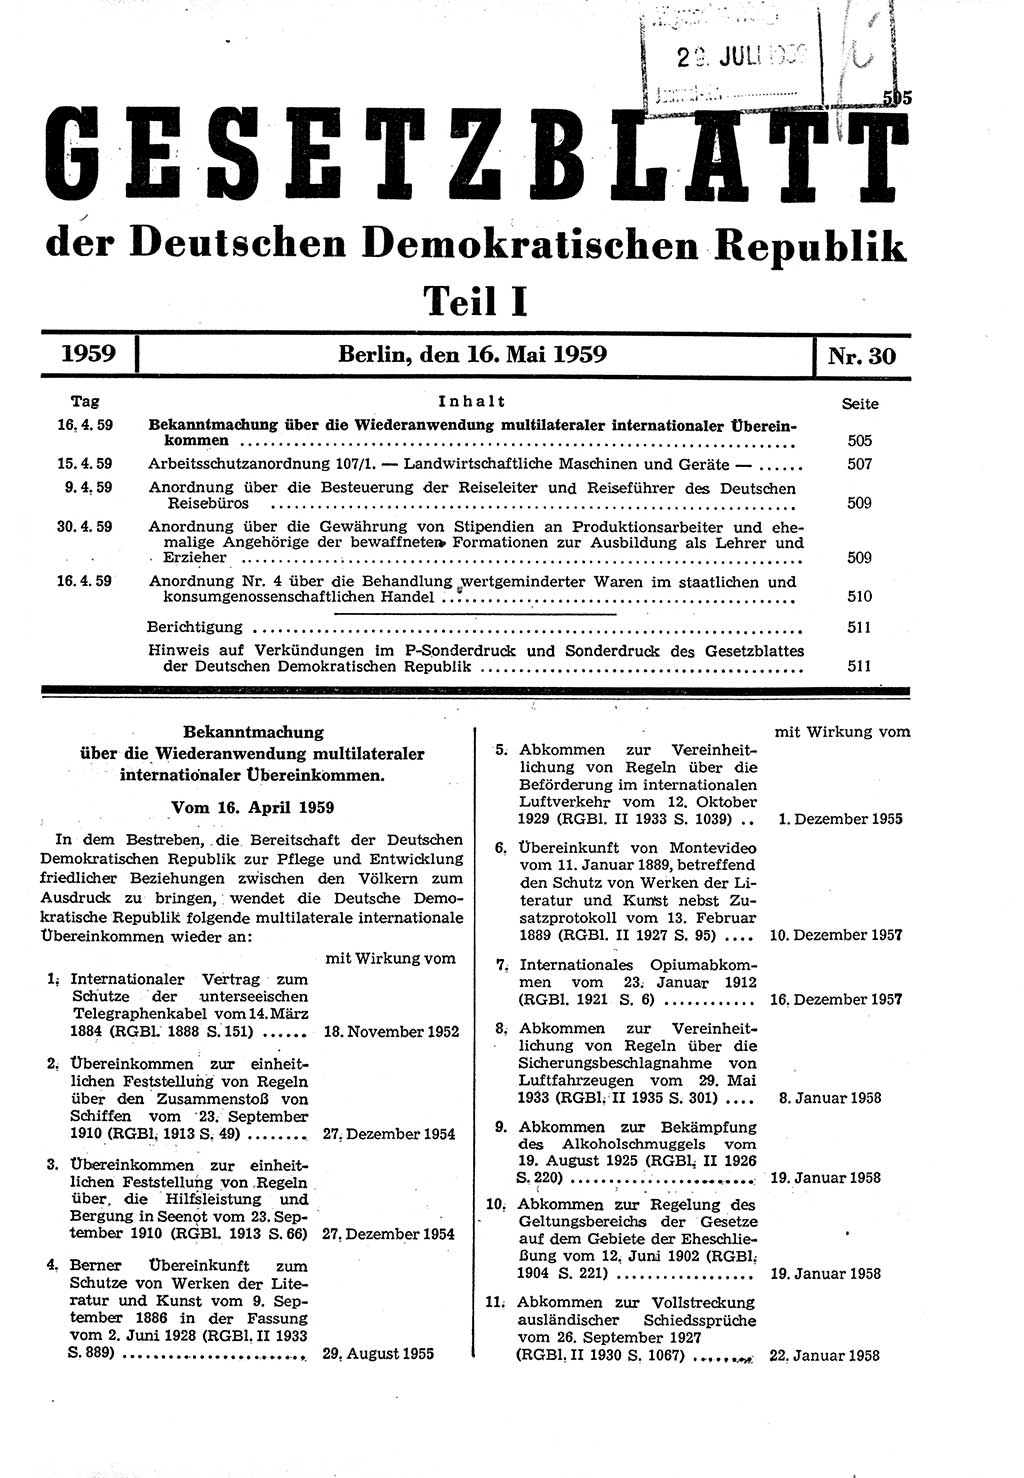 Gesetzblatt (GBl.) der Deutschen Demokratischen Republik (DDR) Teil Ⅰ 1959, Seite 505 (GBl. DDR Ⅰ 1959, S. 505)